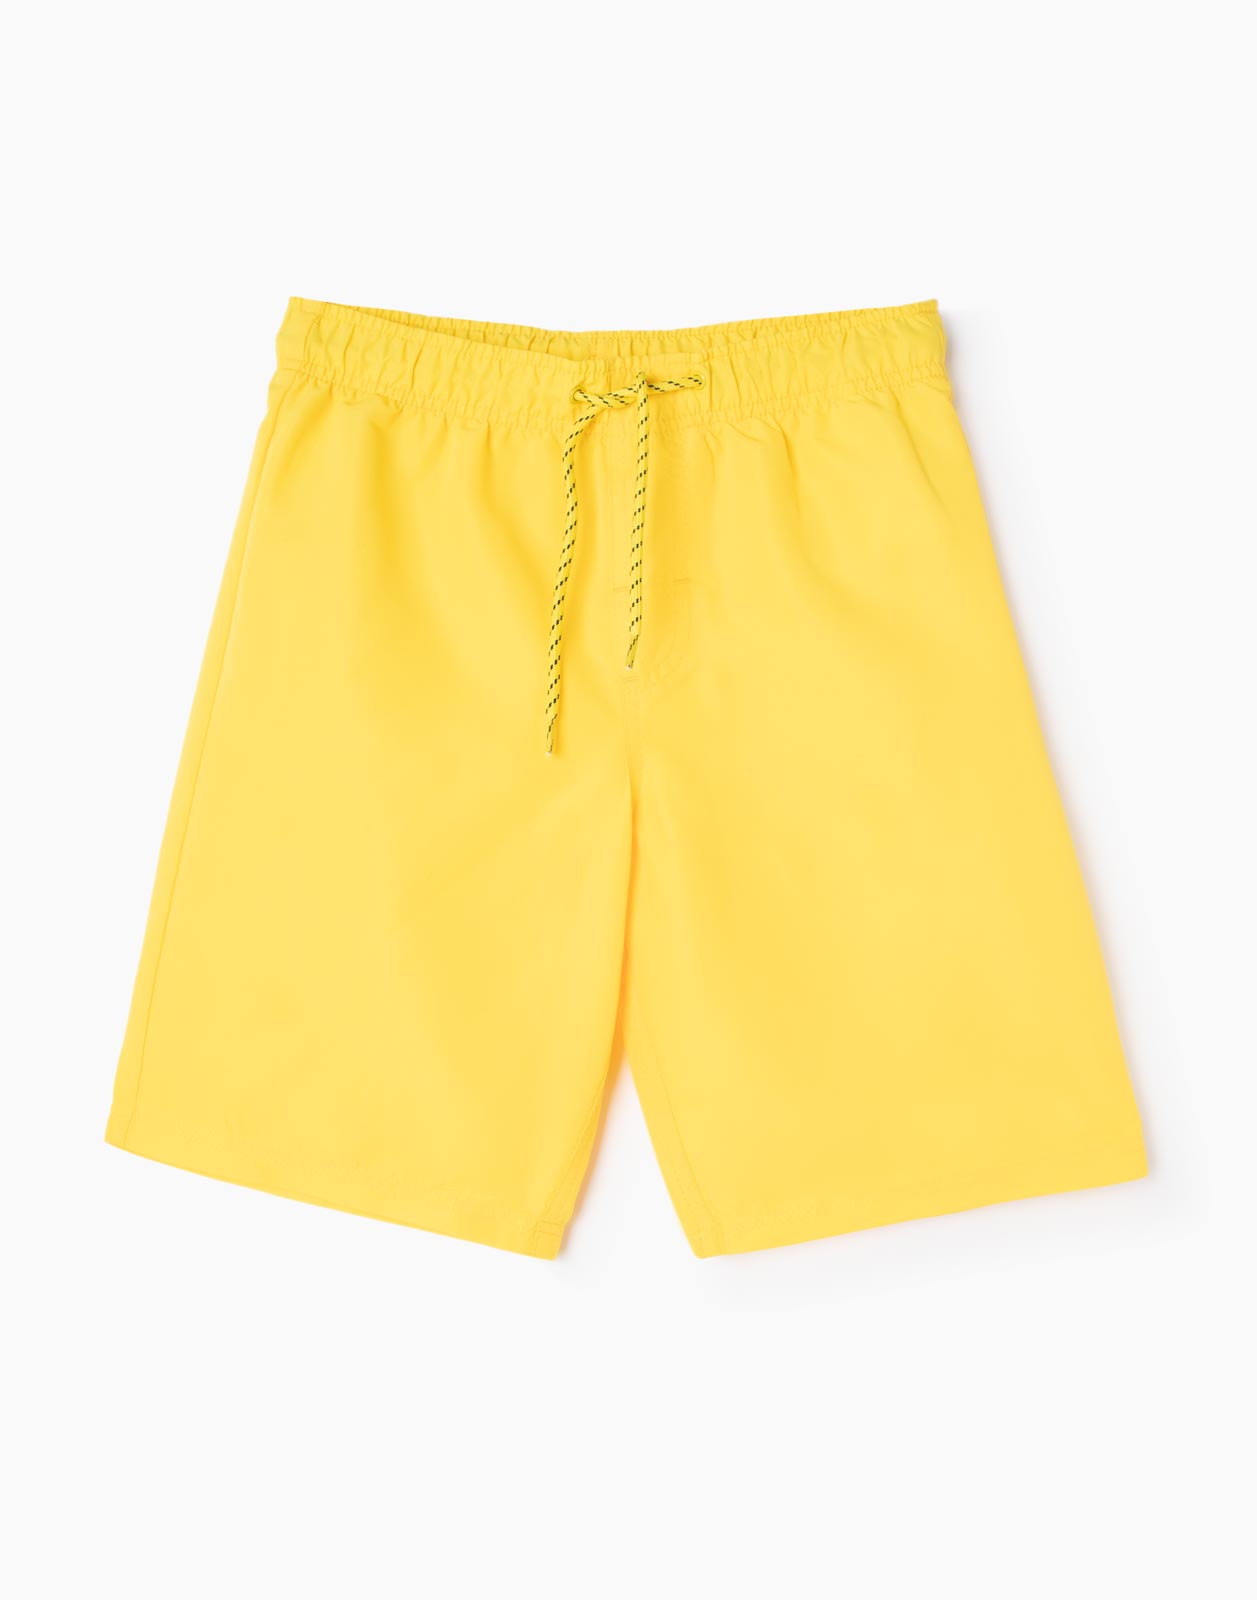 Жёлтые плавательные шорты для мальчика р.146-152